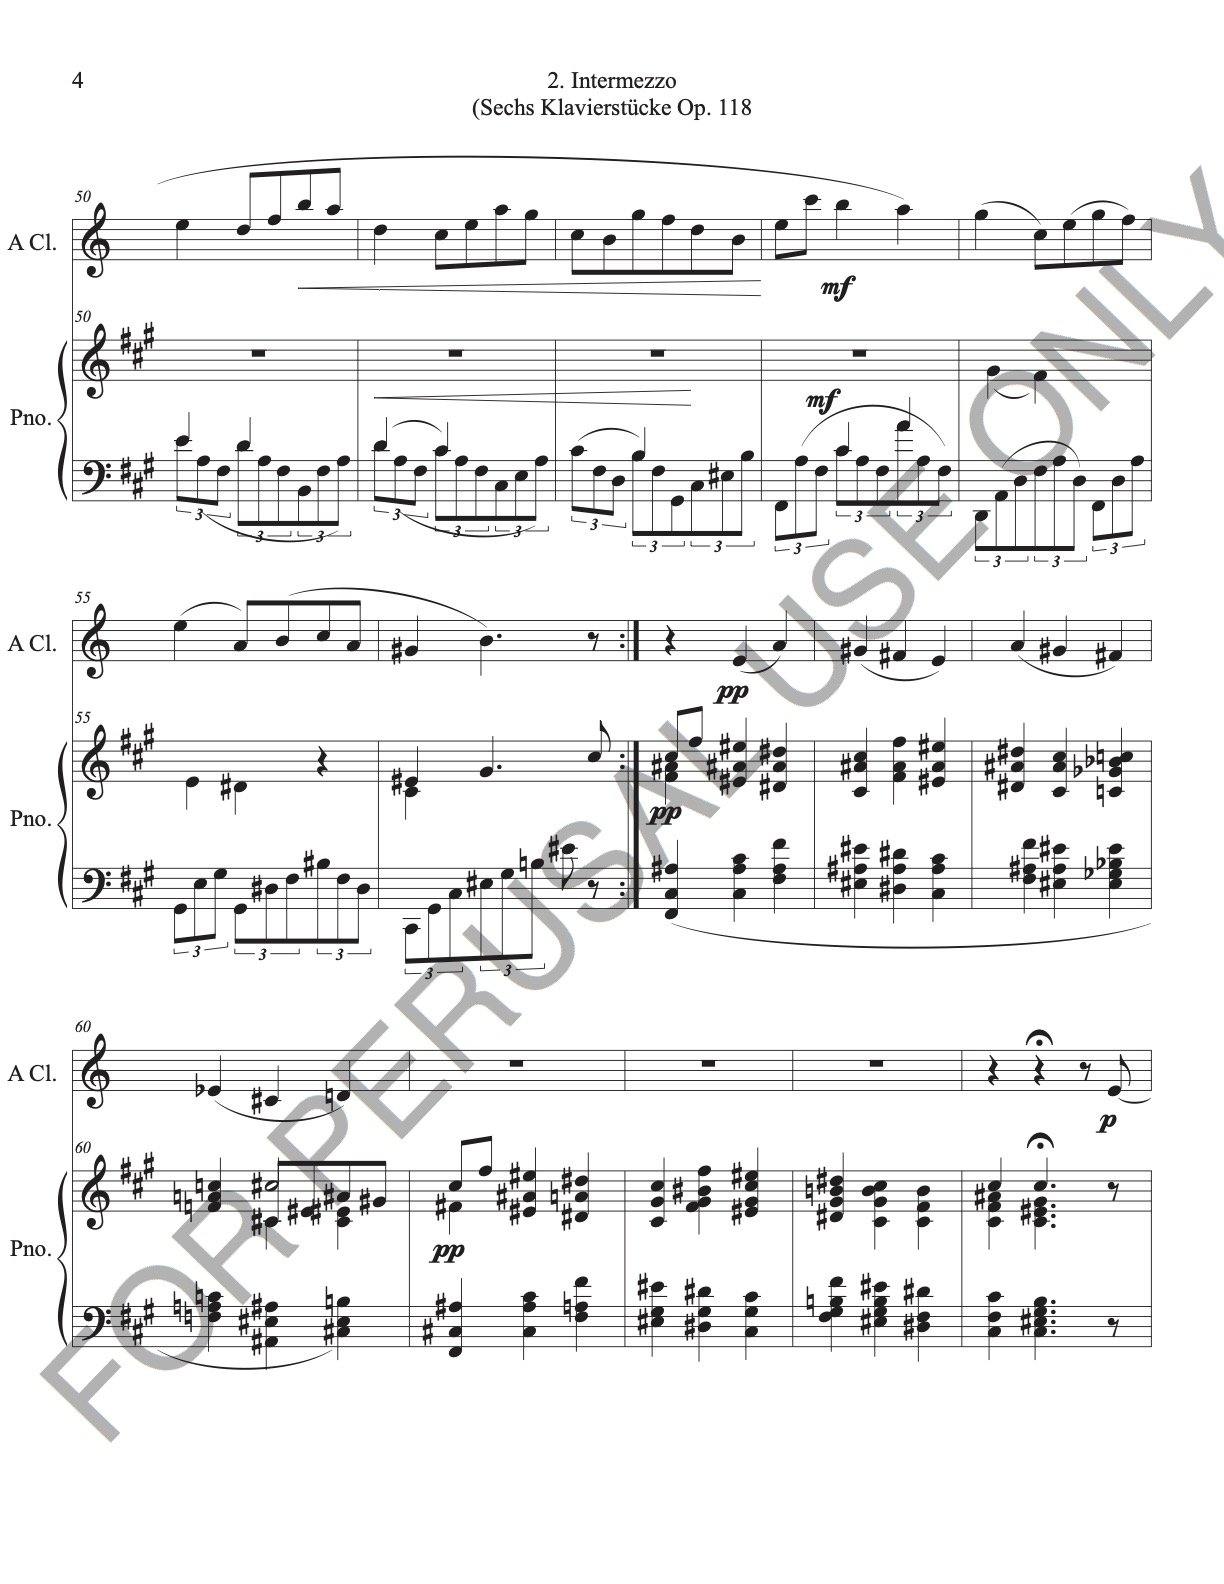 Audio mp3 Piano track of Intermezzo Op. 118 no.2 for Solos and Piano - ChaipruckMekara